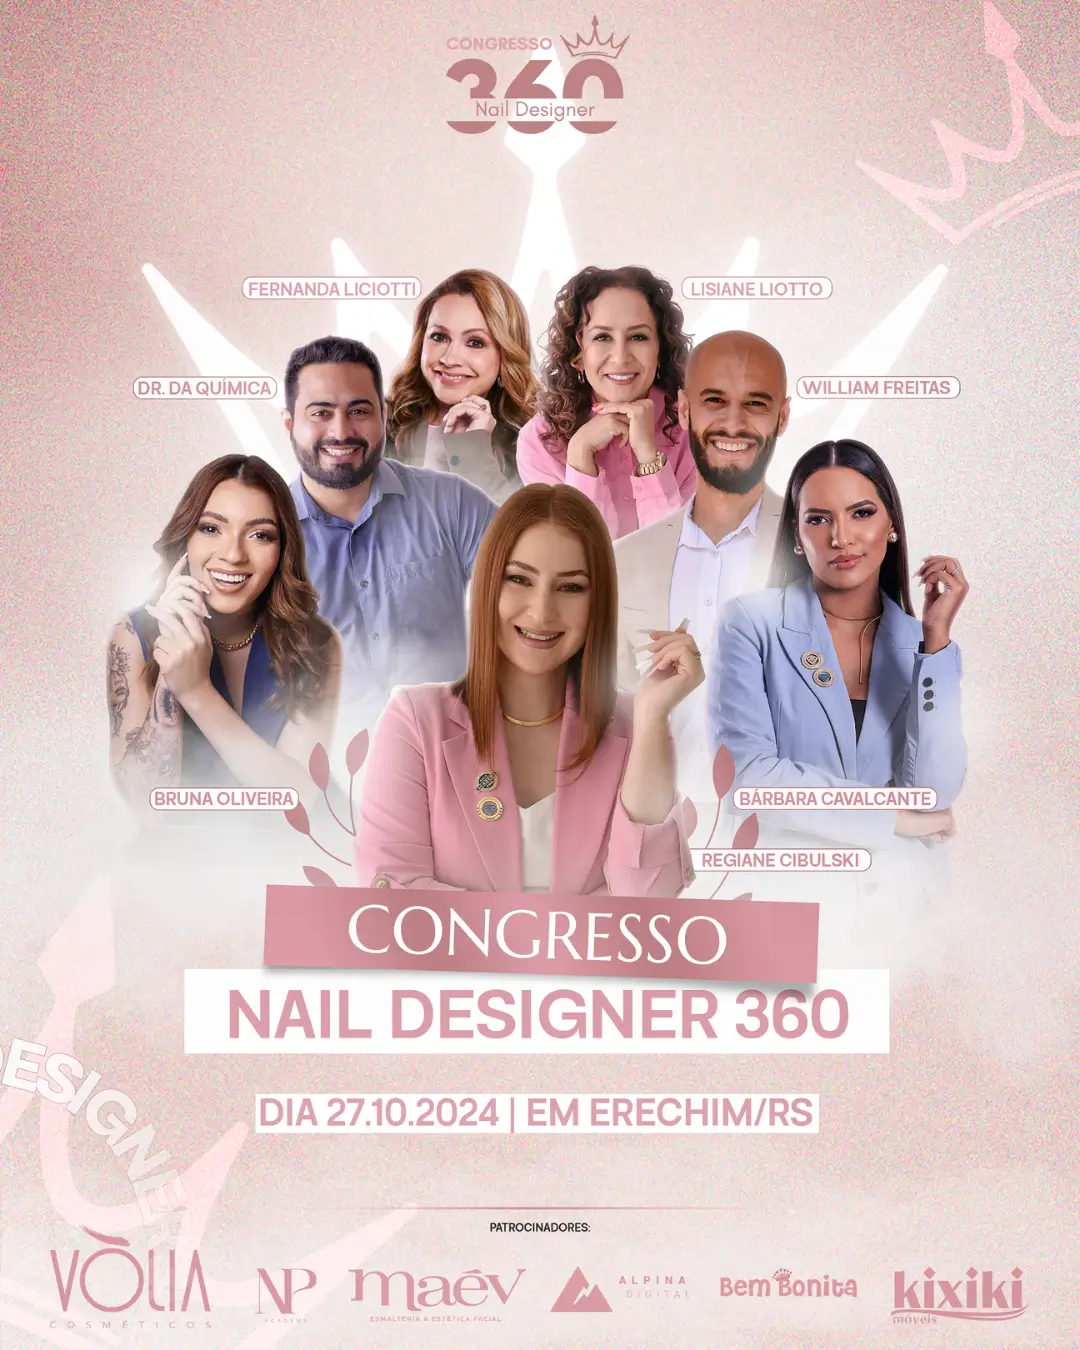 Congresso nail designer